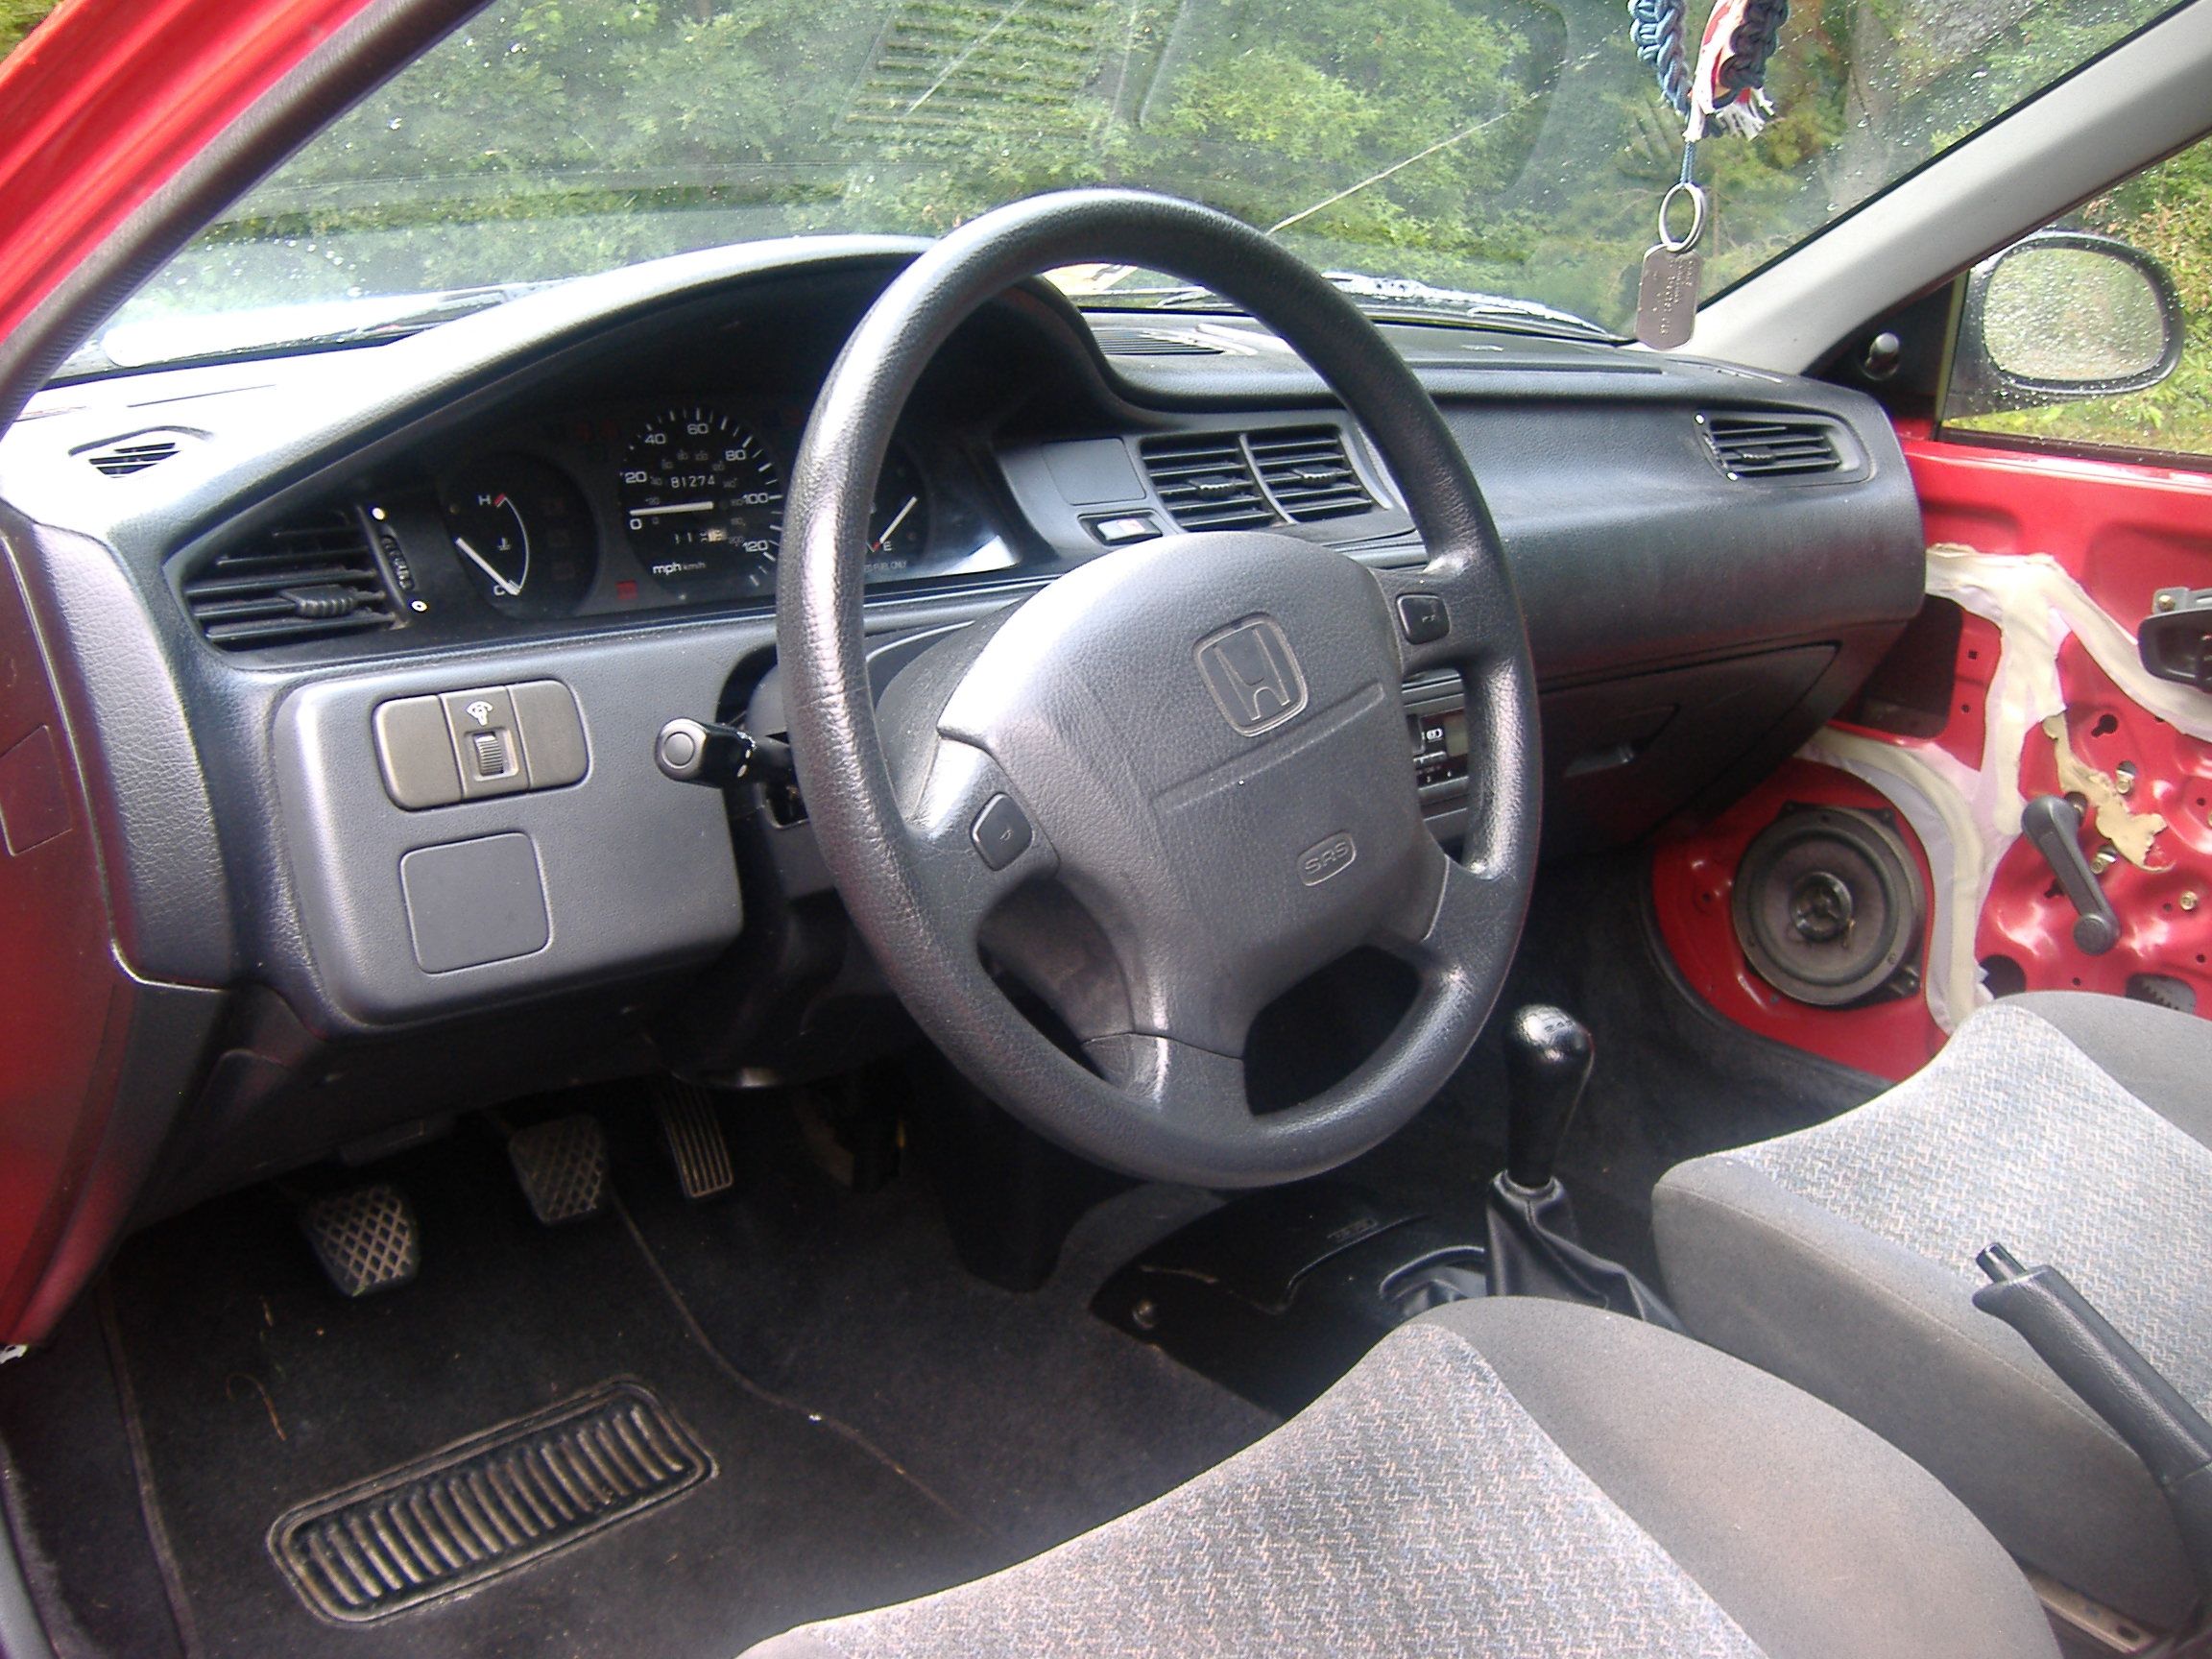 Driver side interior